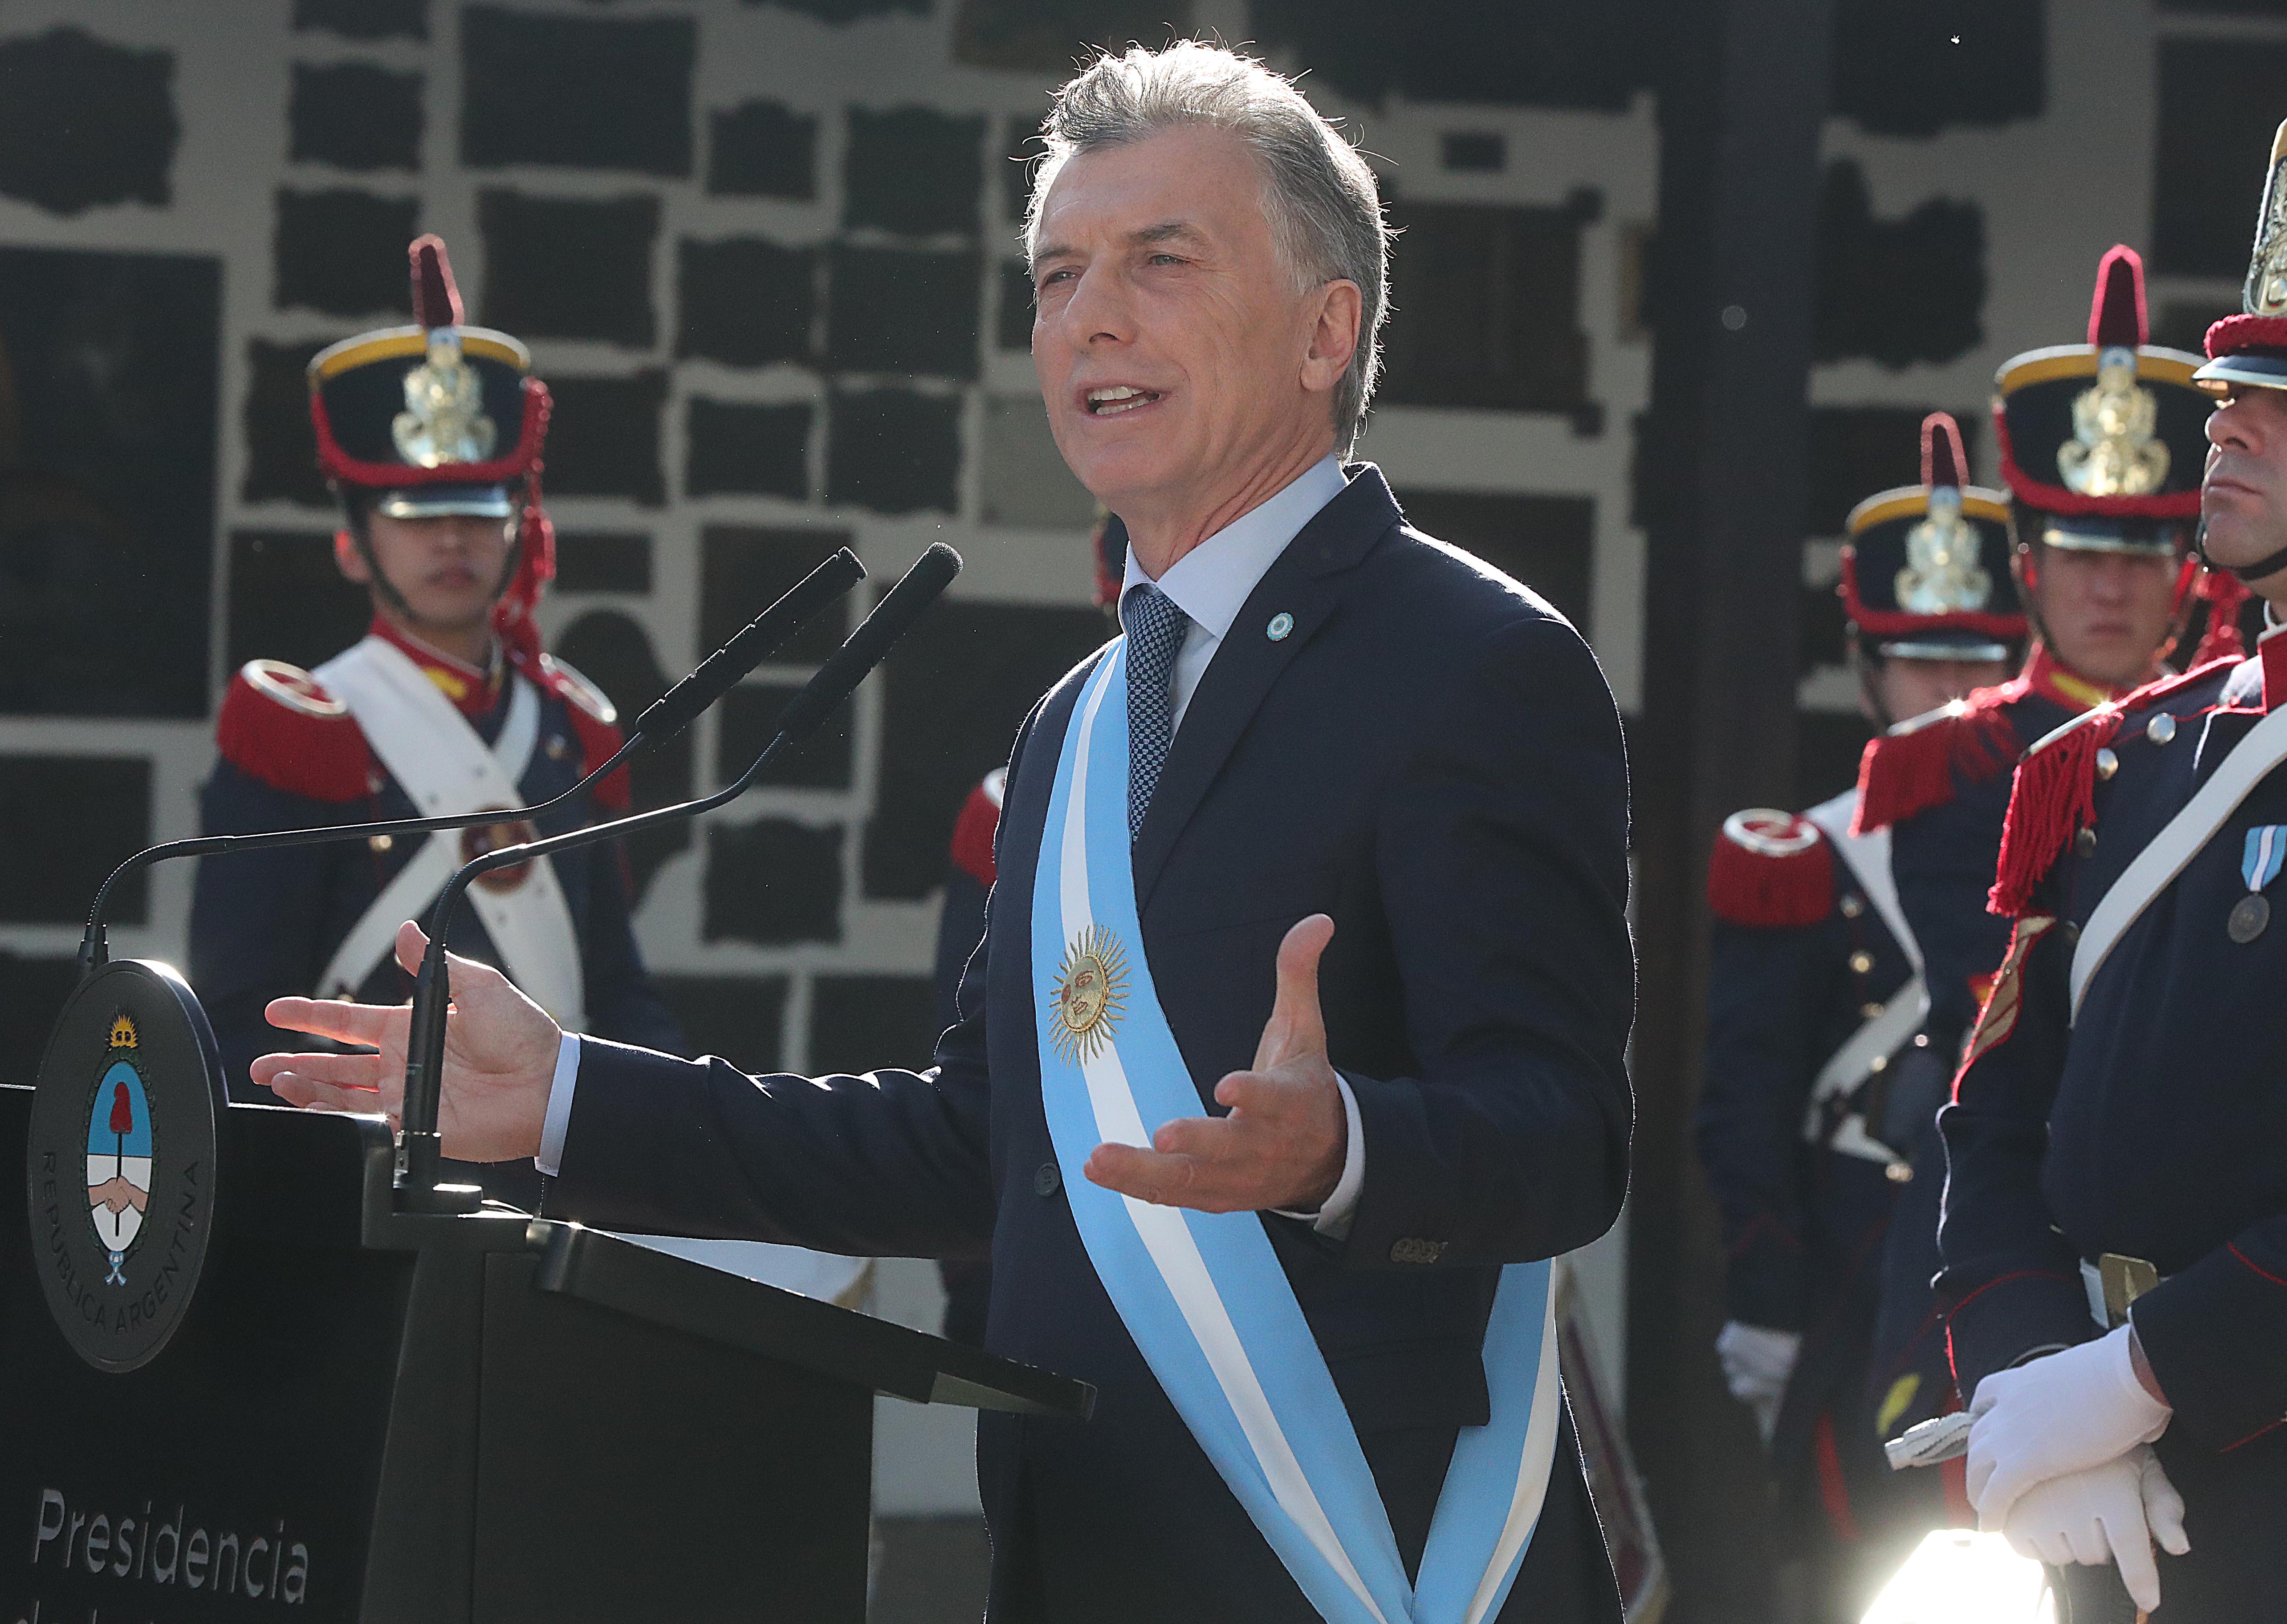 Hoy la Argentina nos exige el mismo paso de grandeza que tuvieron los próceres de 1816